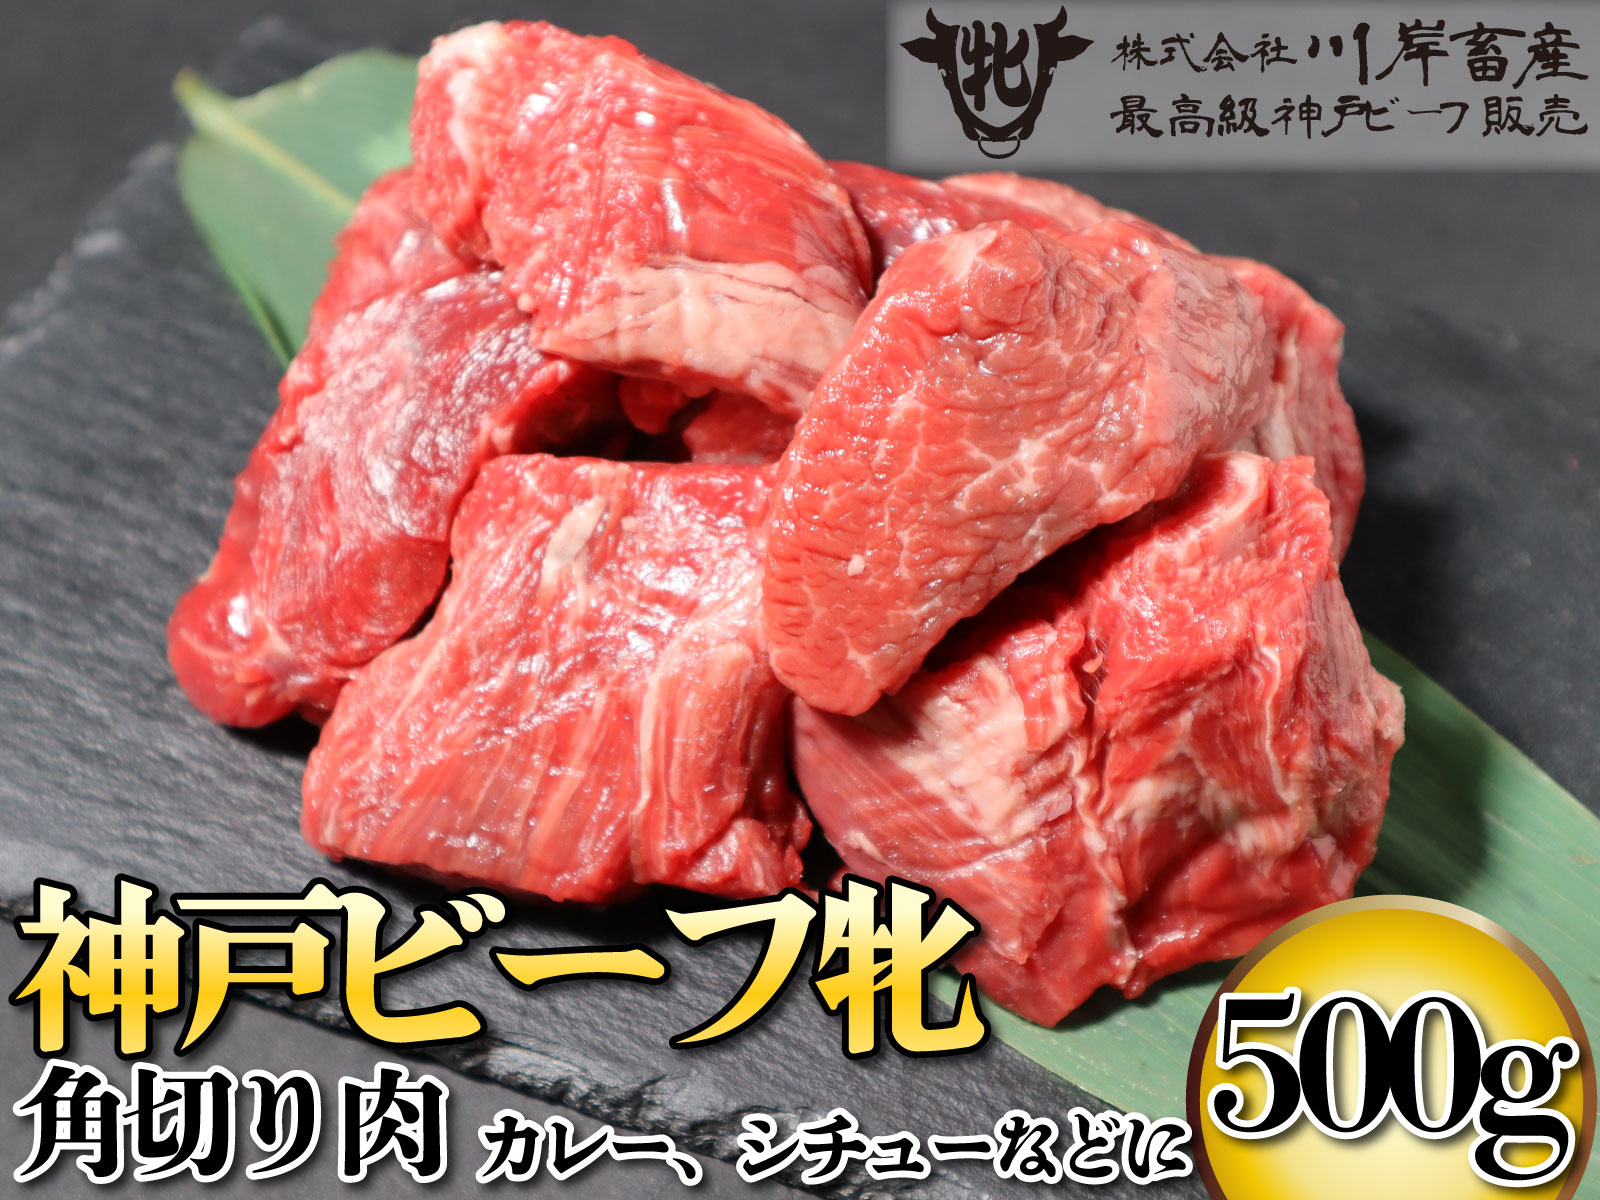 神戸ビーフ牝 デイリー角切り肉 500g[846] 神戸牛 川岸畜産 川岸牧場 お祝い